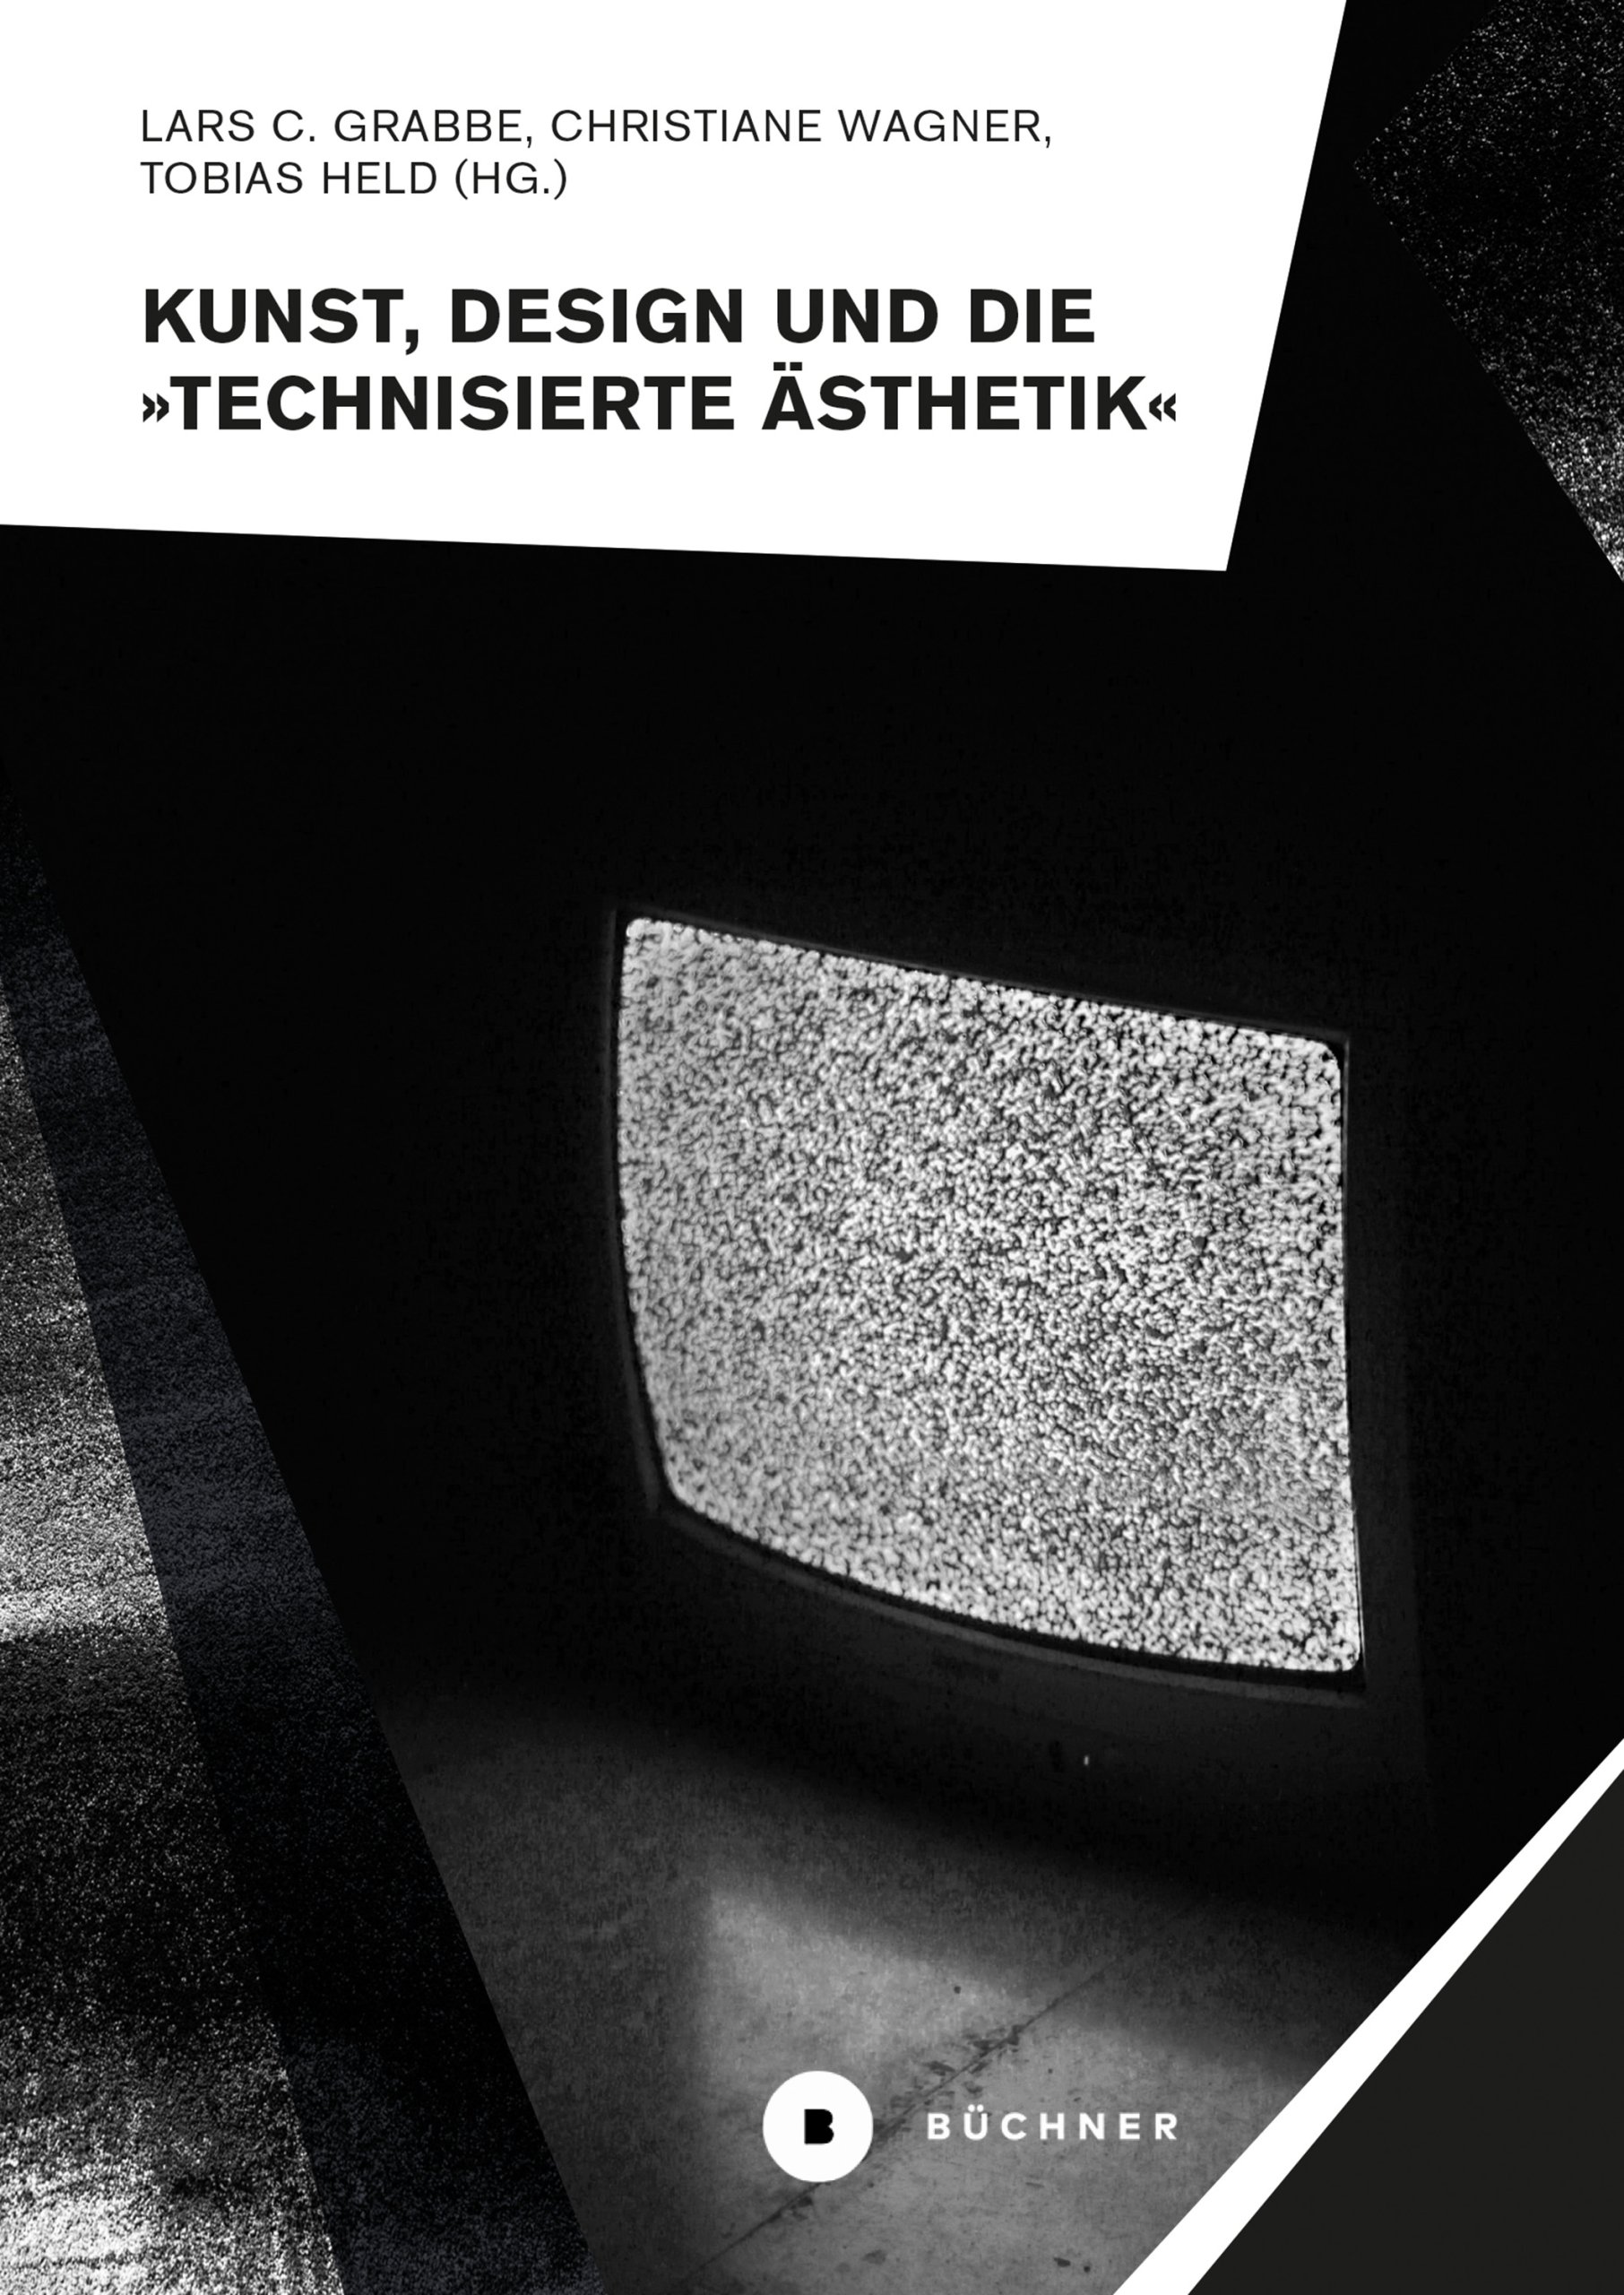 publication Kunst, Design und die technisierte Ästhetik